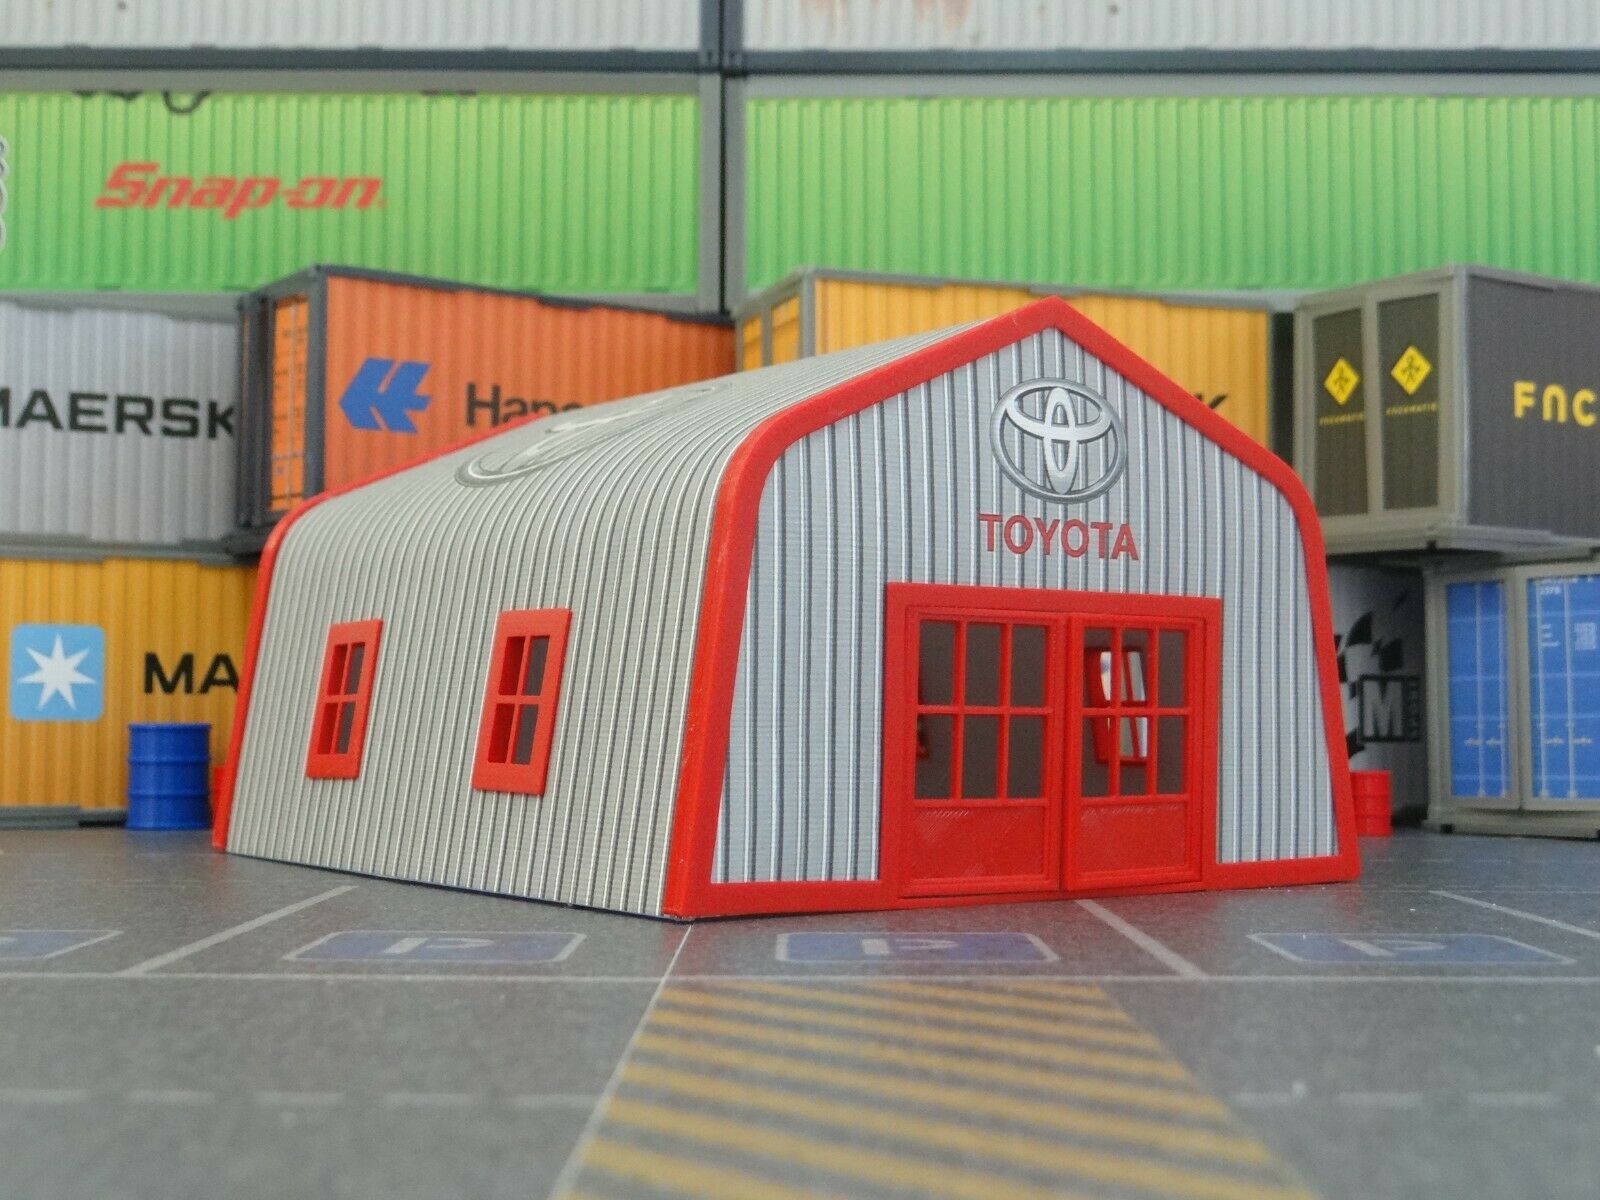 diorama garage